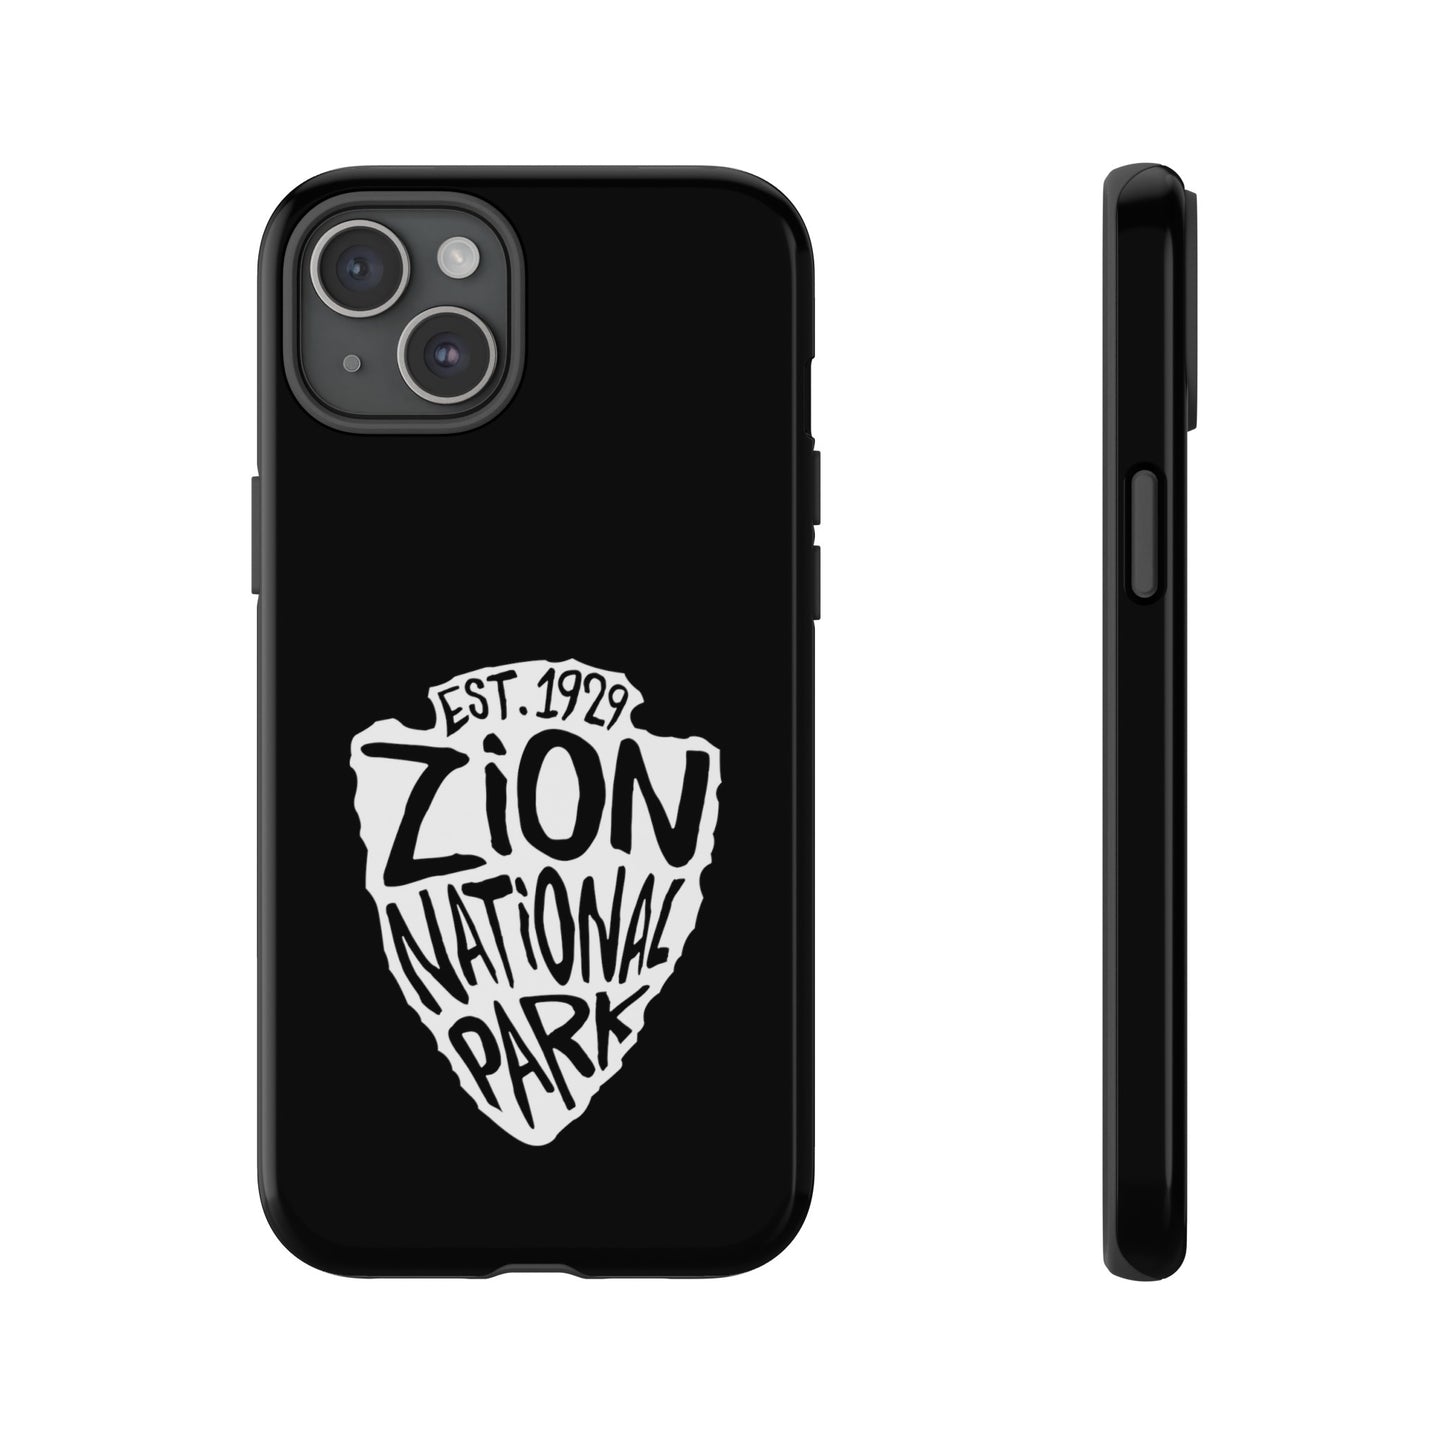 Zion National Park Phone Case - Arrowhead Design